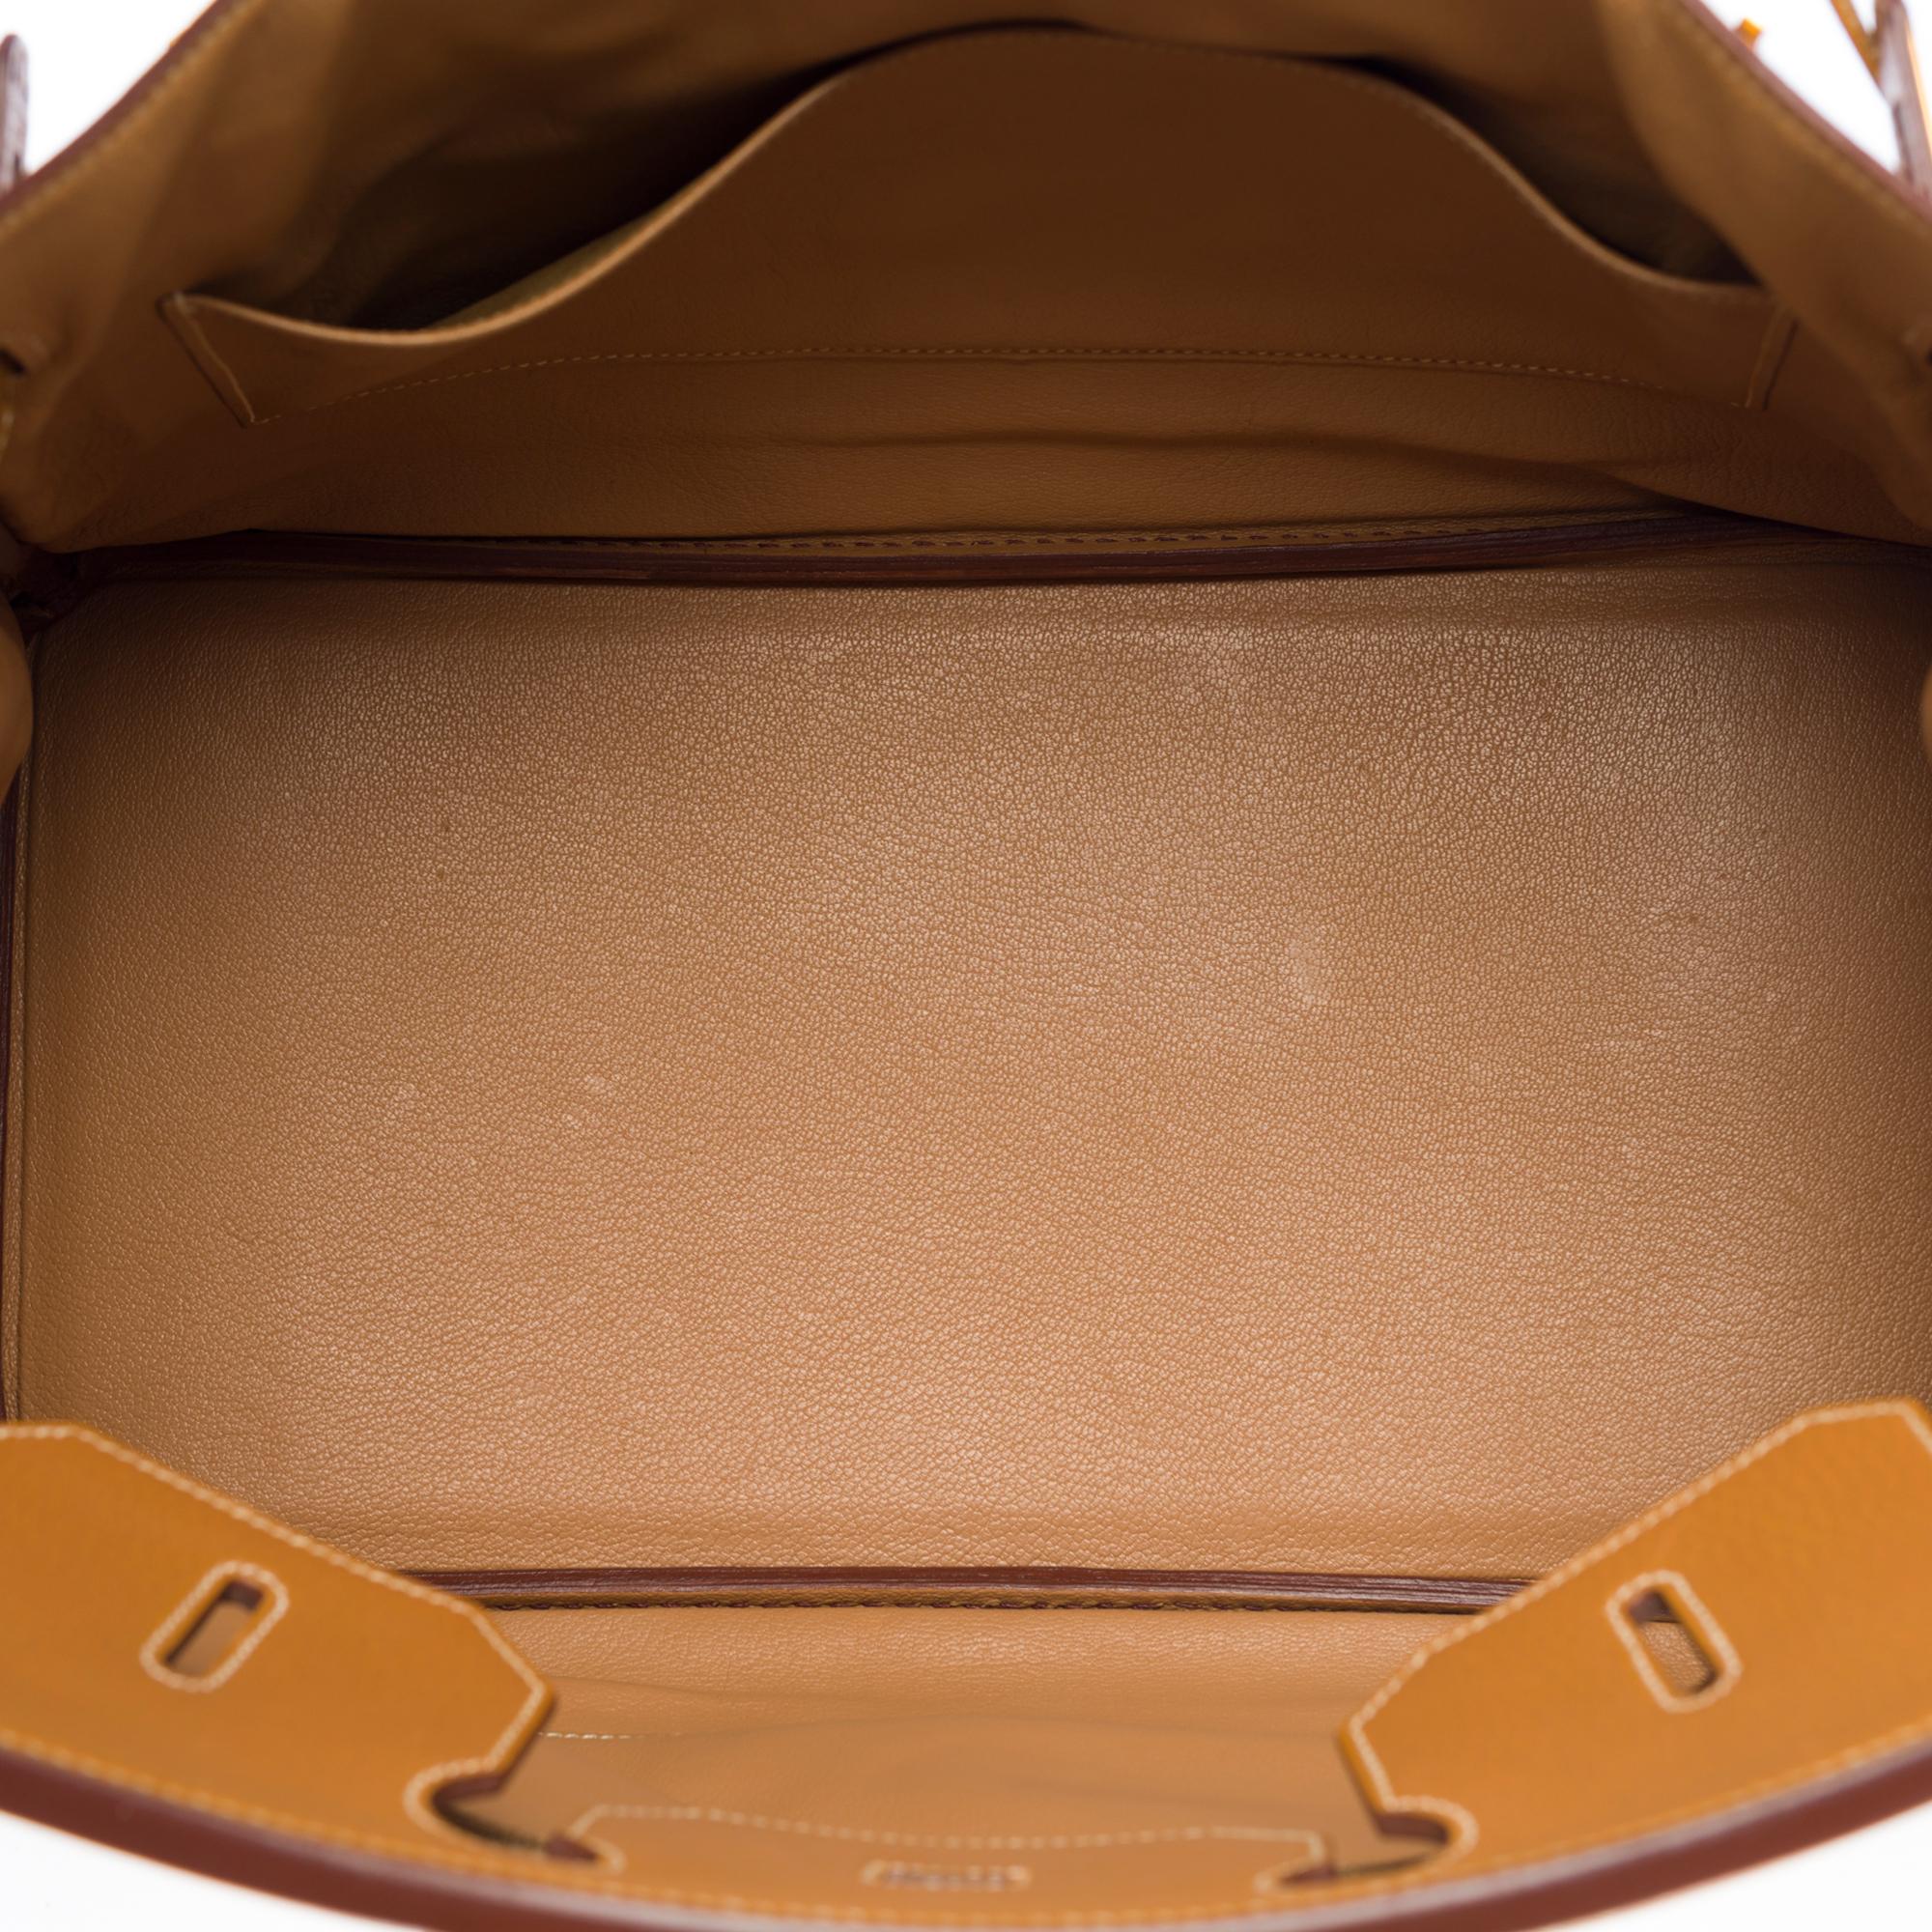 Amazing Hermès Birkin 35 handbag in Gold Vache Ardennes leather, GHW 2